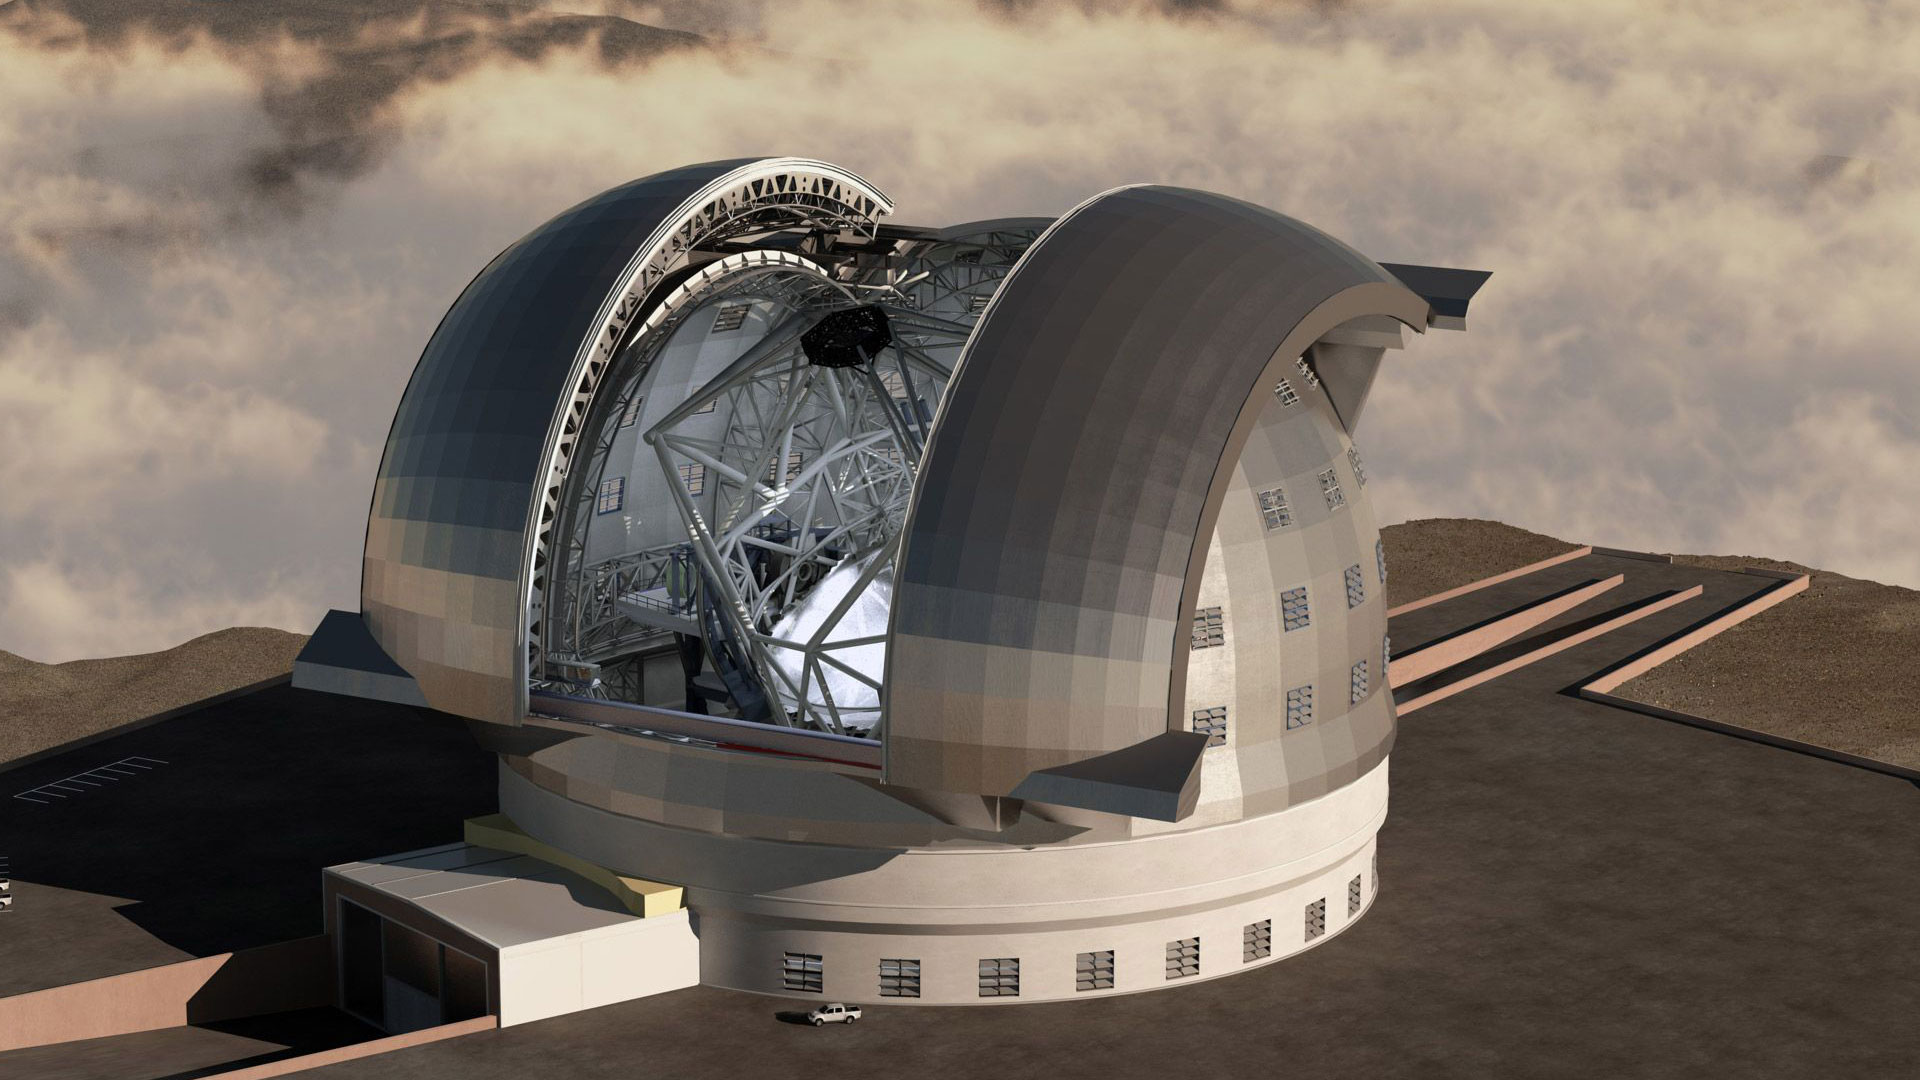 Le télescope E-ELT, un œil de géant tourné vers le ciel. De tous les projets de télescopes géants, l'E-ELT, de l'Eso, est le plus grand. Avec un miroir de 39 mètres de diamètre, il surpassera les 30 mètres du TMT (Thirty Meter Telescope), les sept miroirs de 8,4 mètres du télescope géant Magellan et les deux miroirs de 8,6 mètres du Large Binocular Telescope (LBT). © Eso